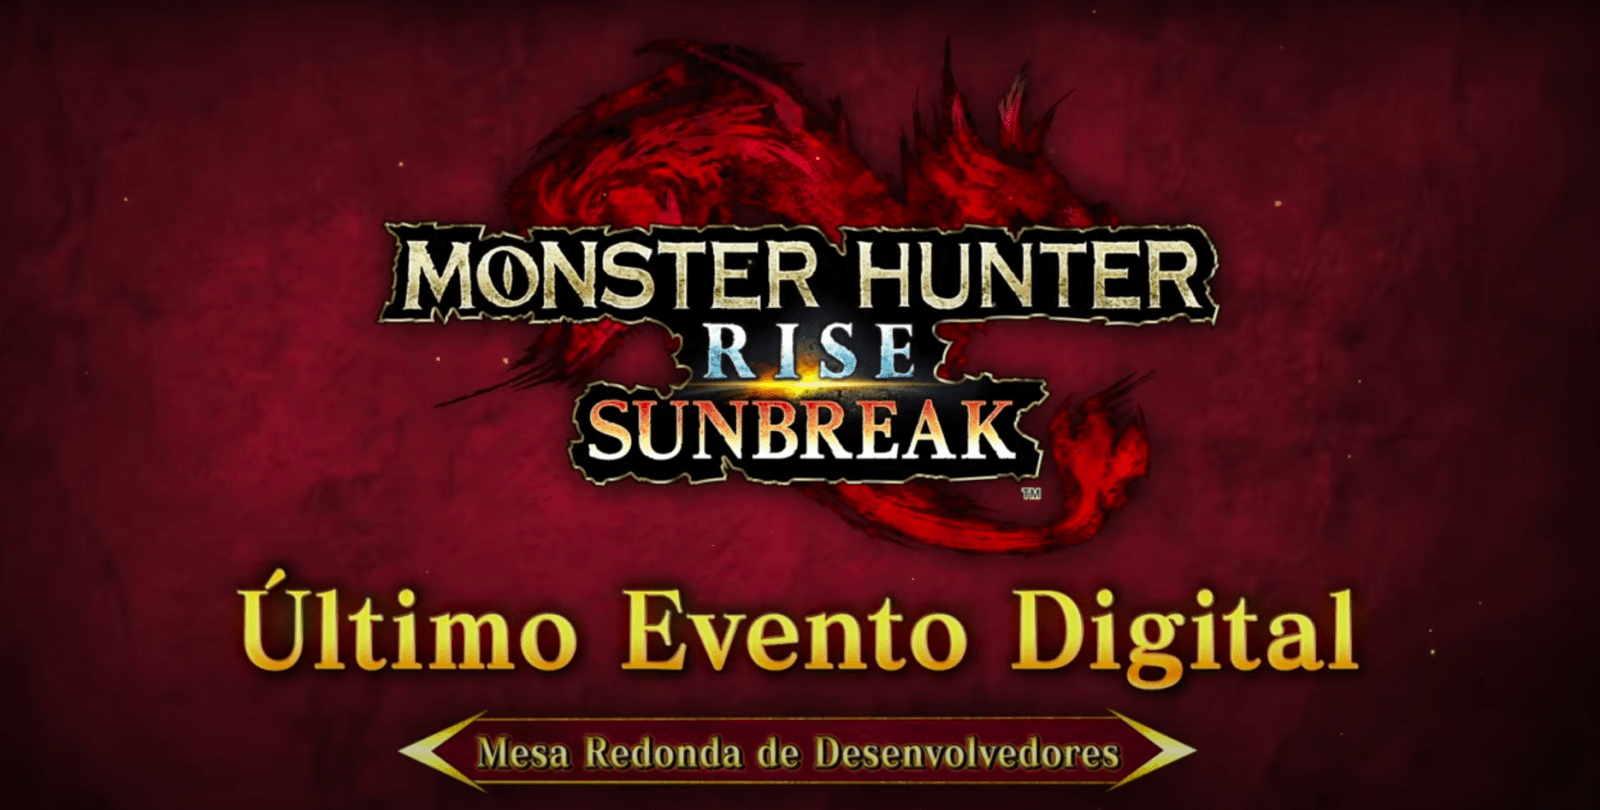 Monster Hunter Rise: Sunbreak - Ultimo Evento Digital